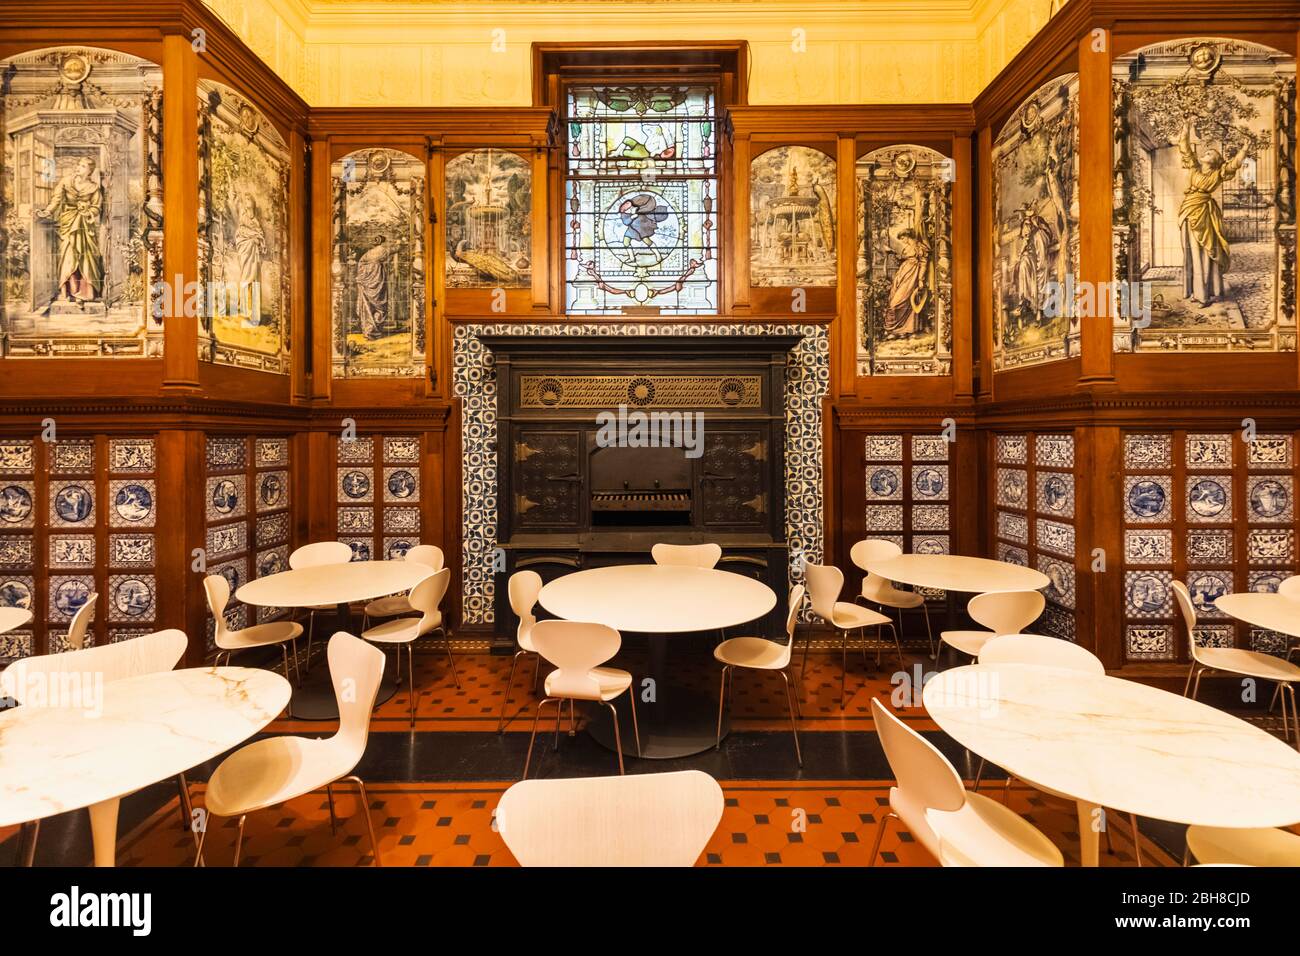 Amazing interiors: The V&A Café